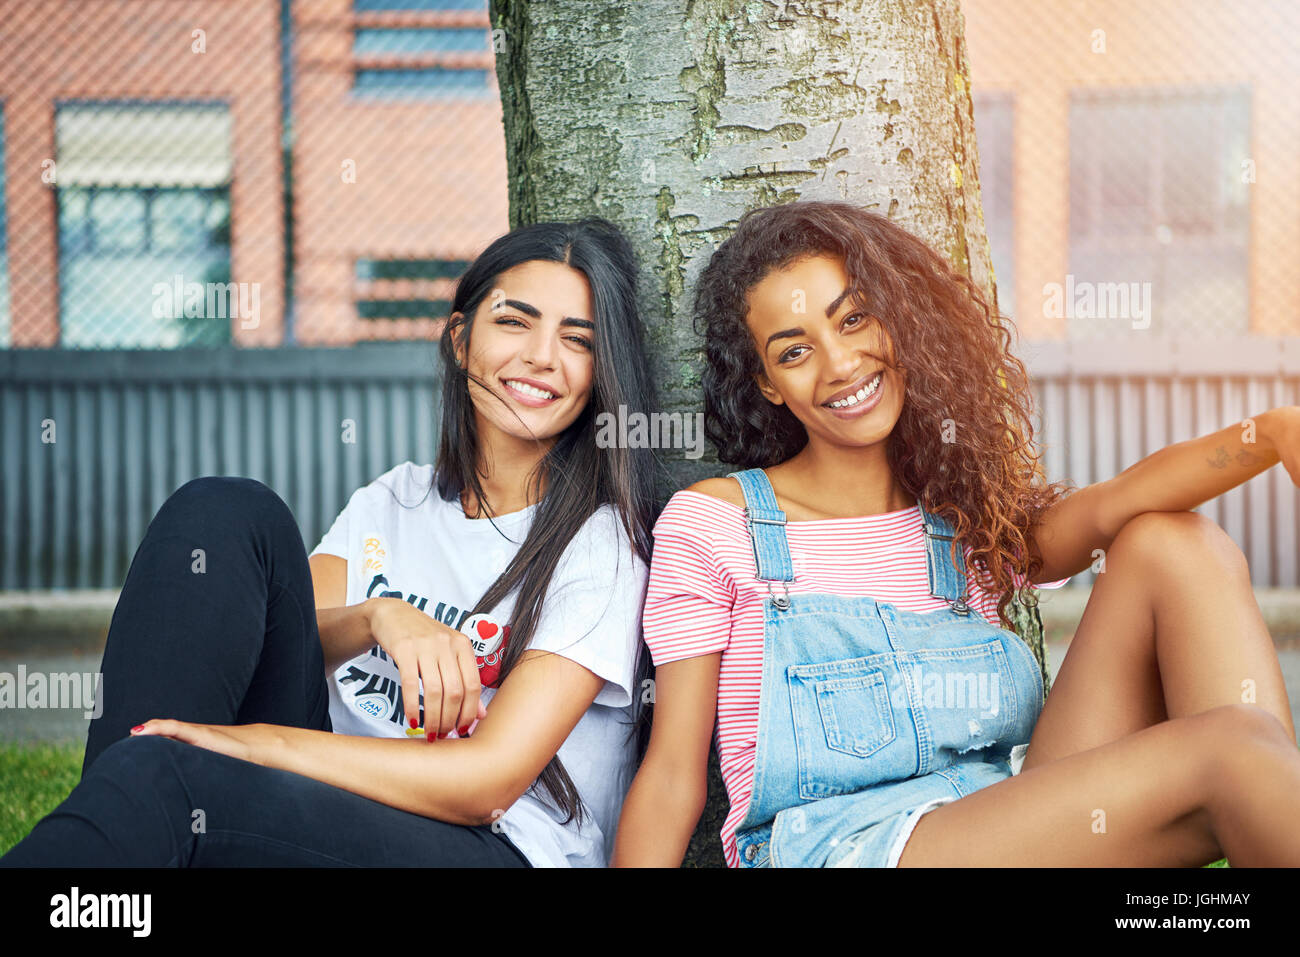 Zwei attraktive junge Freunde sitzen zusammen auf einer Wiese schiefen Lächeln zurück auf einem Baumstamm an einem sonnigen Tag Stockfoto